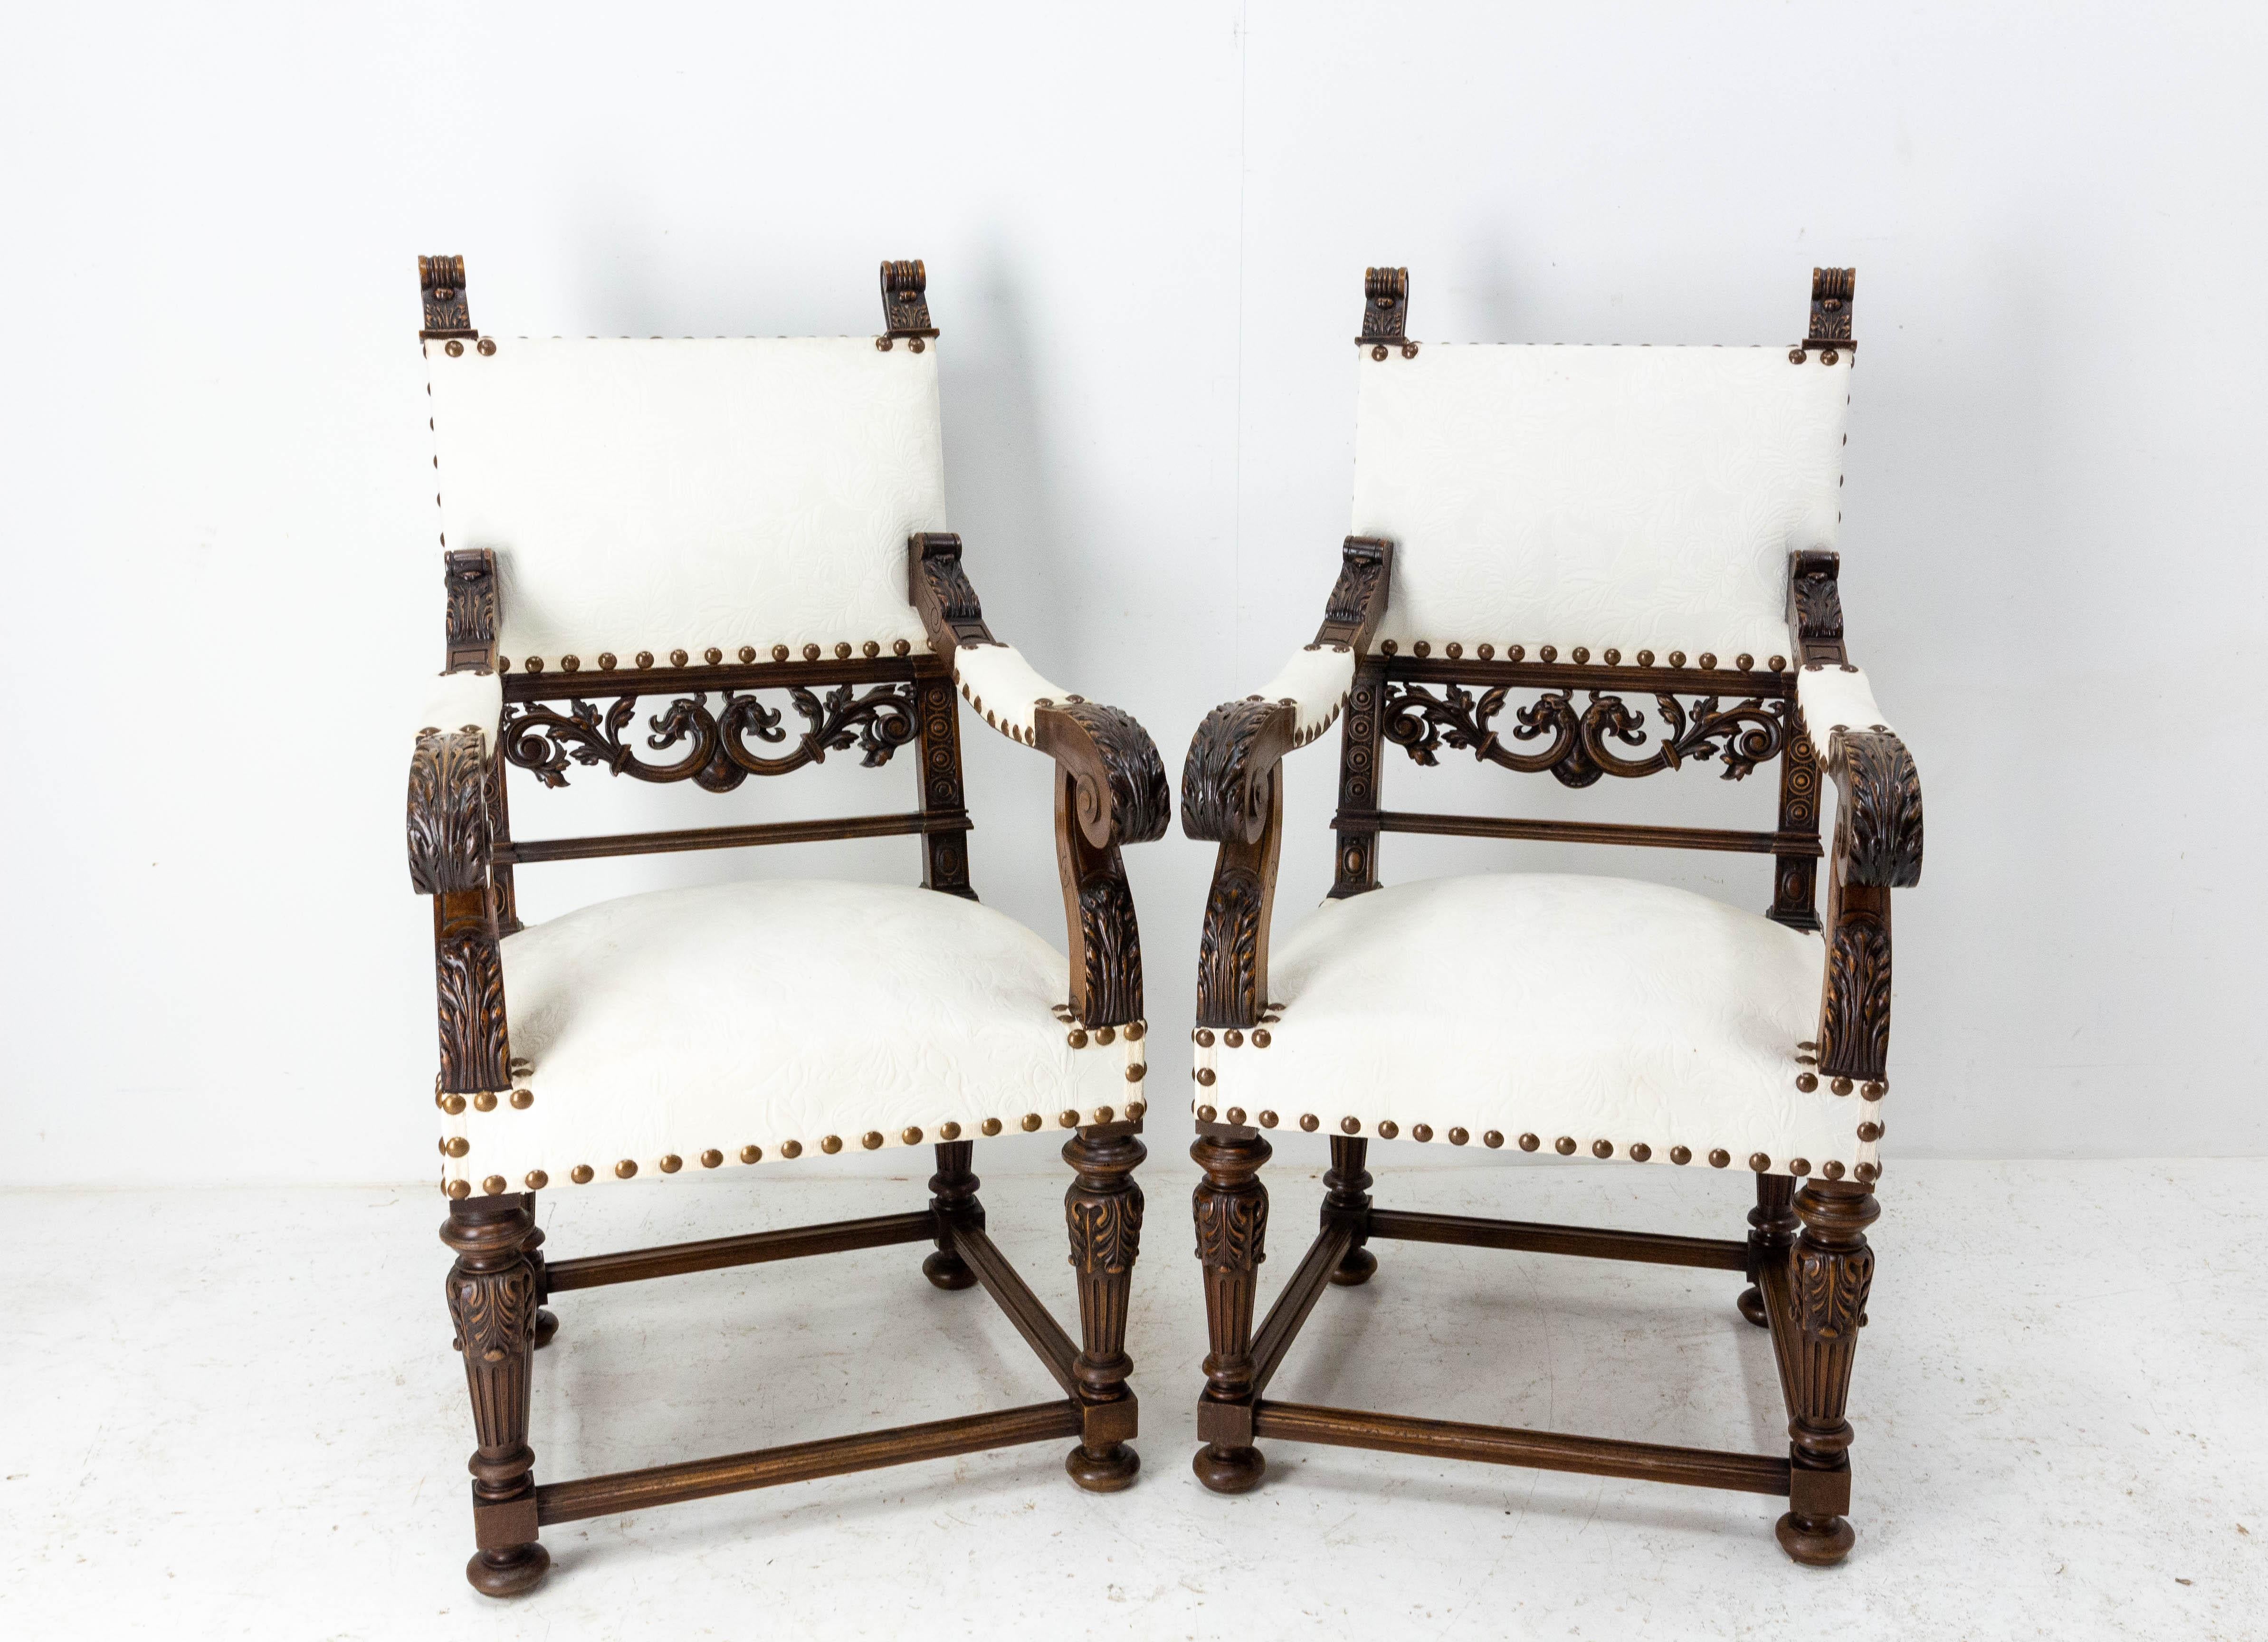 Paire de fauteuils ouverts ou chaises de bureau de style Louis XIII,
Très beau travail de sculpture sur bois
A récupérer.
vers 1850.
Très bon état.
Les cadres sont sains et solides.

Expédition :
L129 P61 H112 30Kg